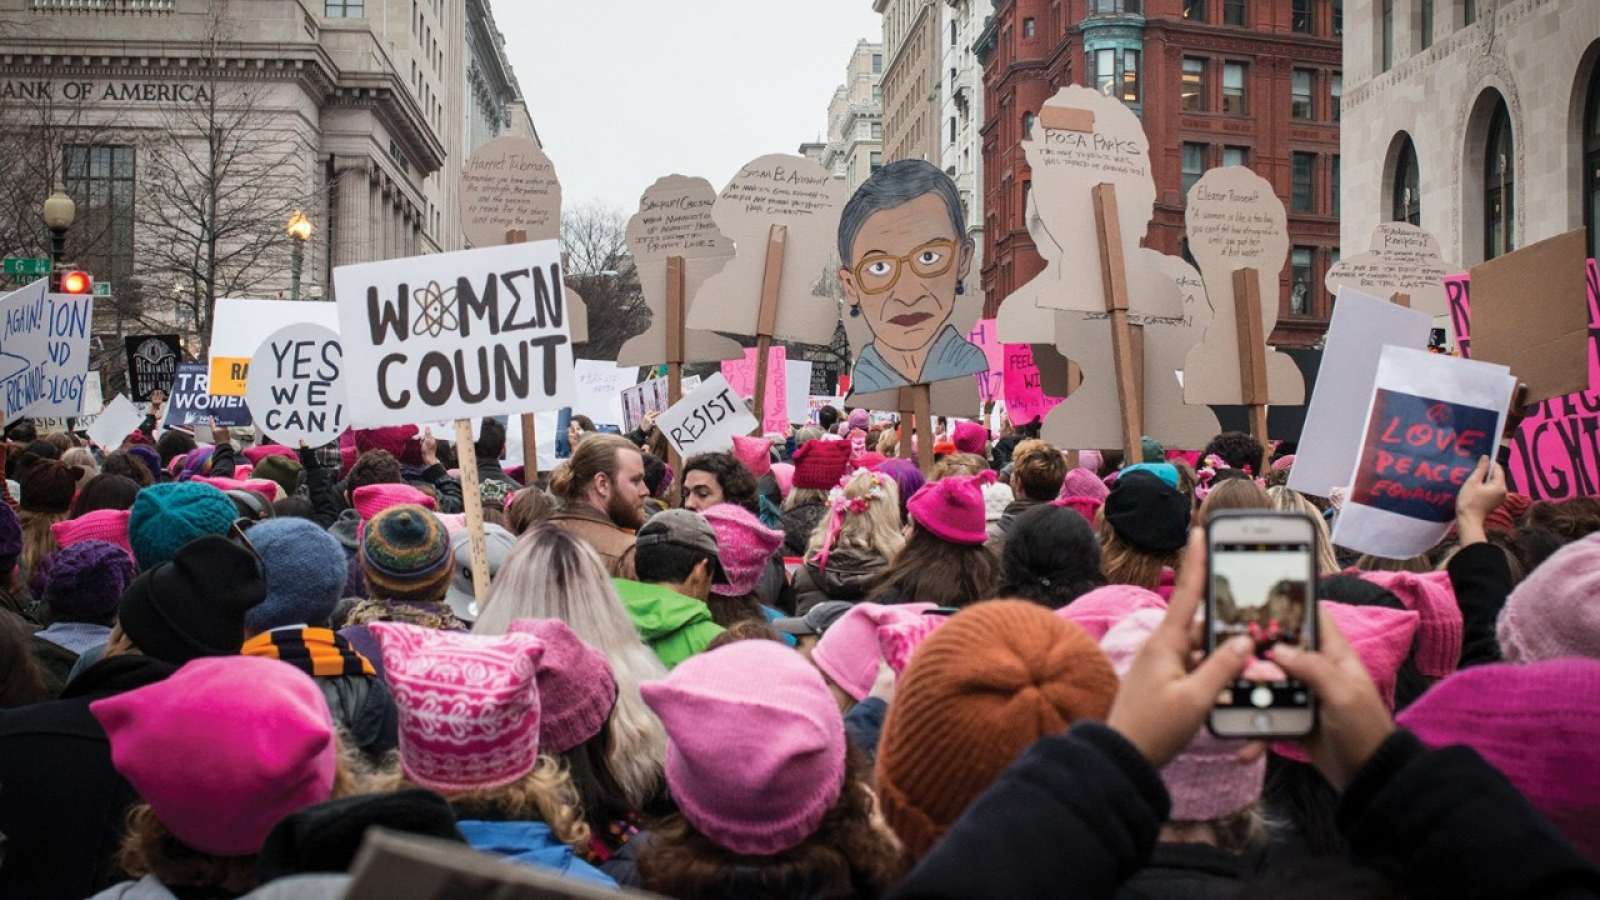 Women's march